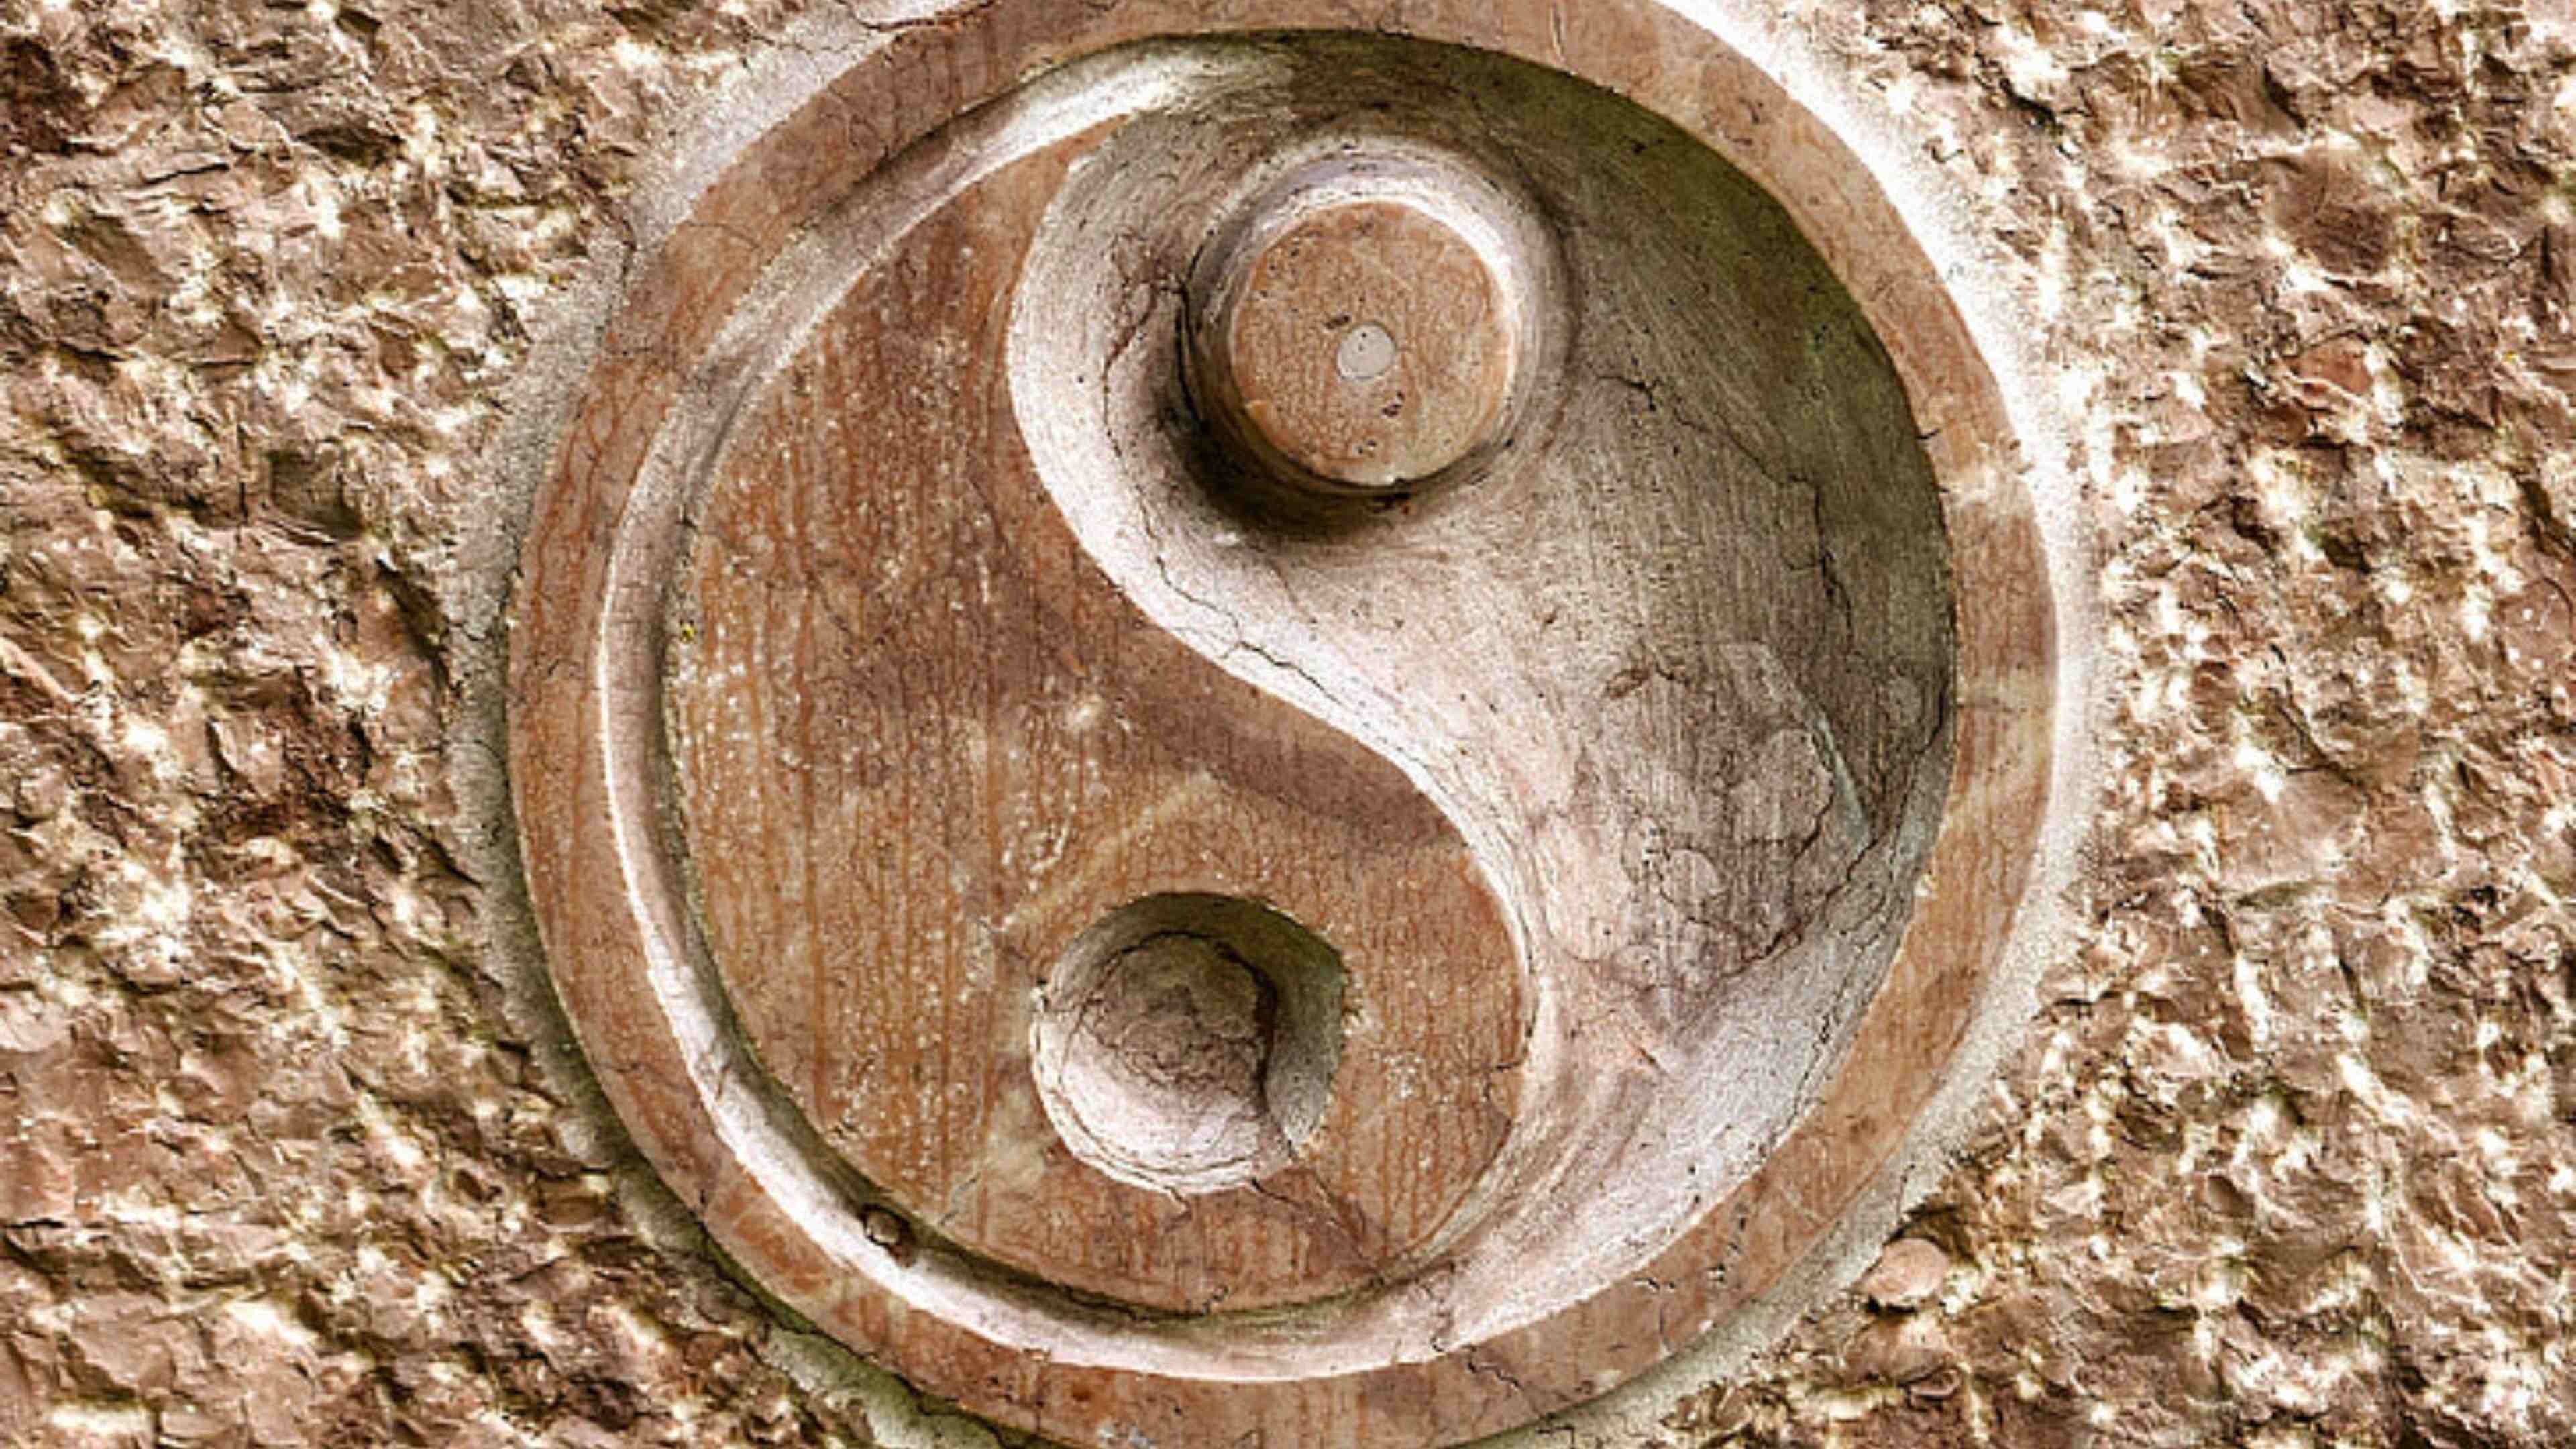 Que pensez-vous des concepts de yin et de yang dans la philosophie chinoise ?